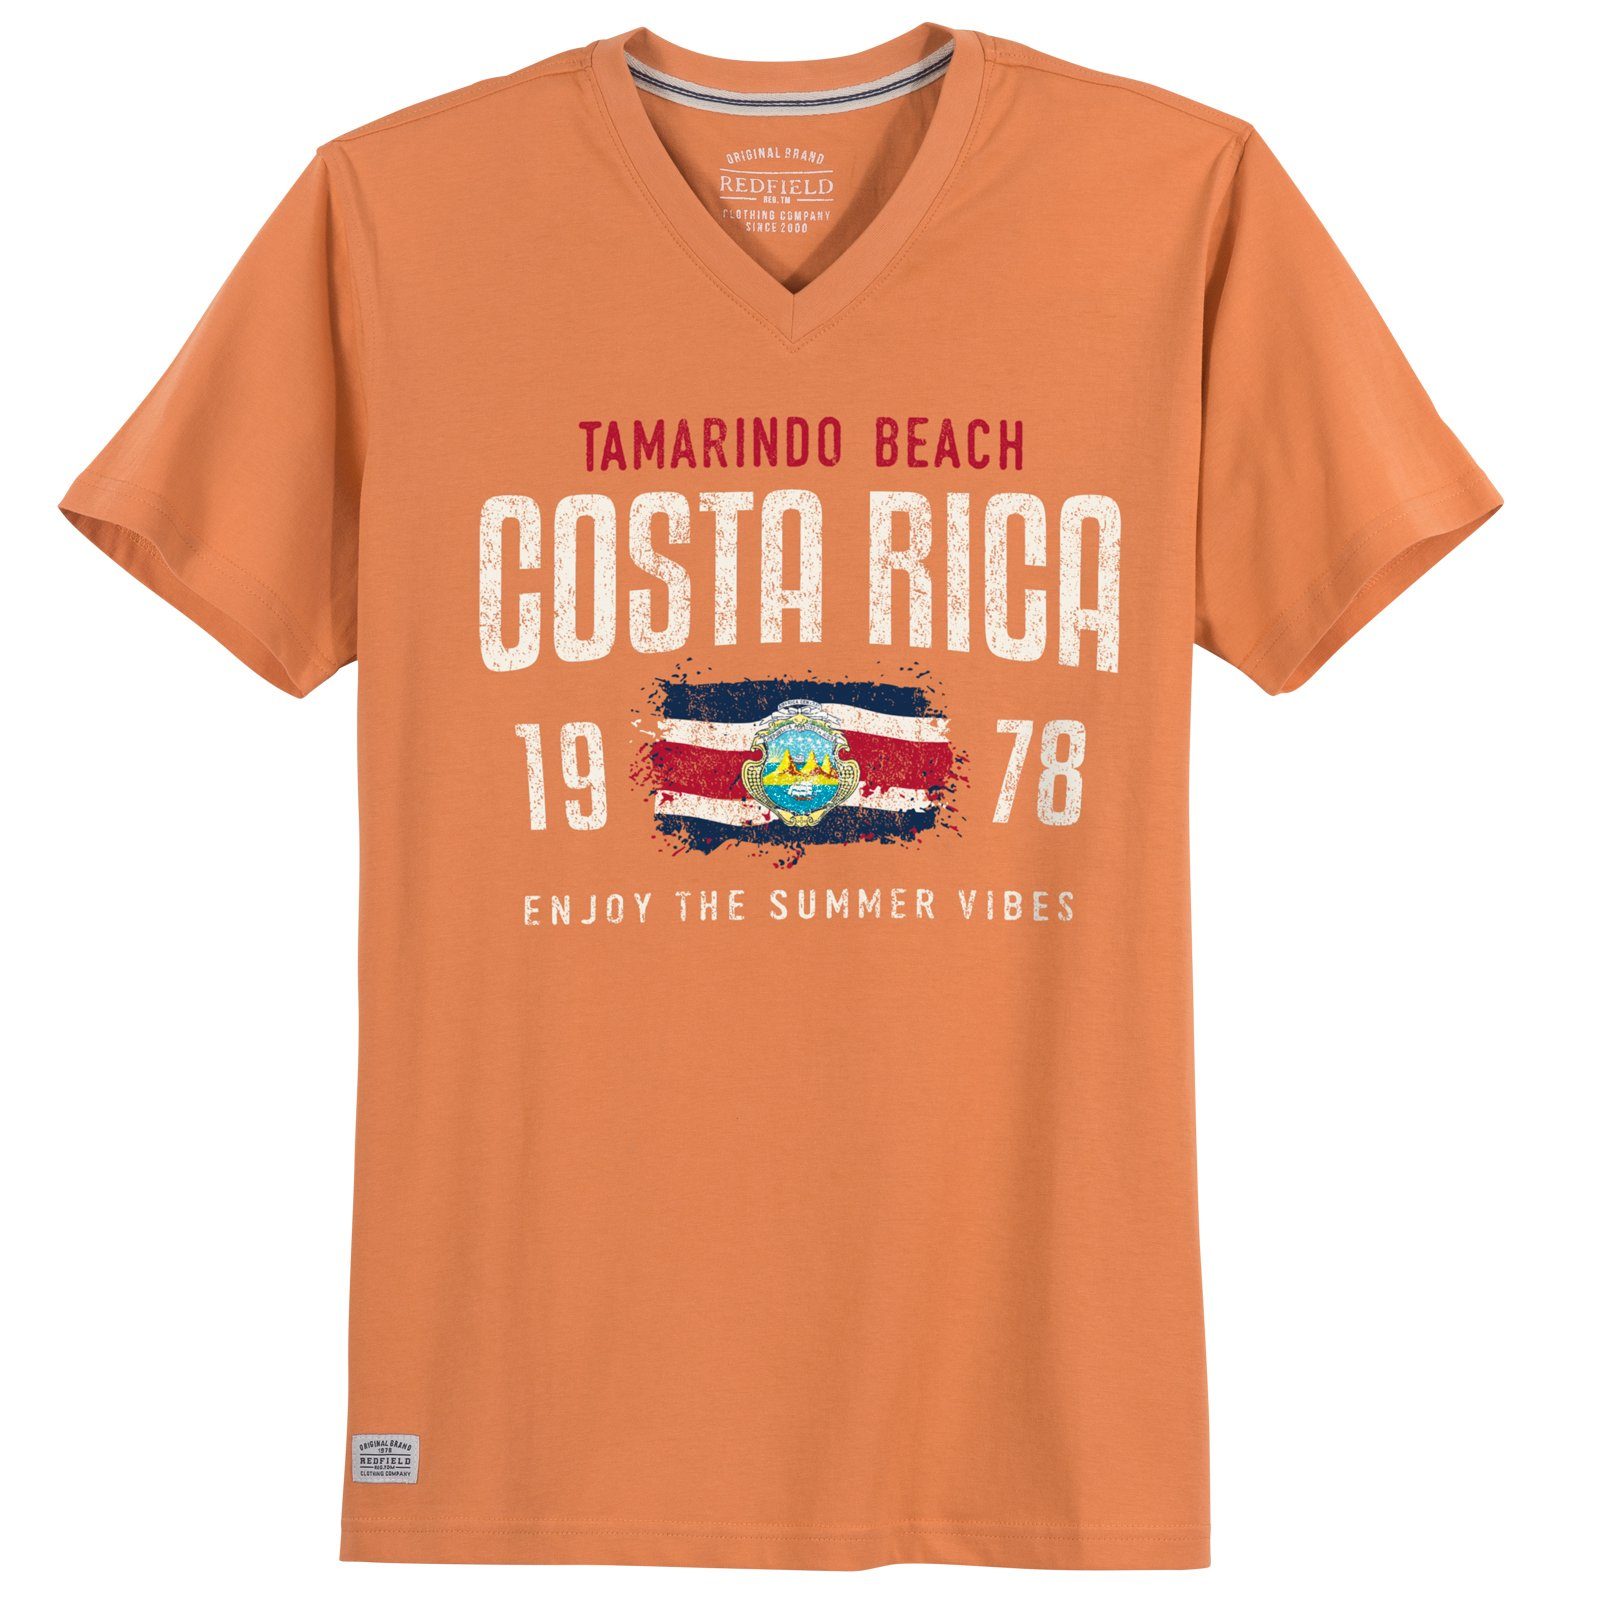 Größen T-Shirt Rica Costa redfield Große V-Neck Herren Redfield Print-Shirt orange